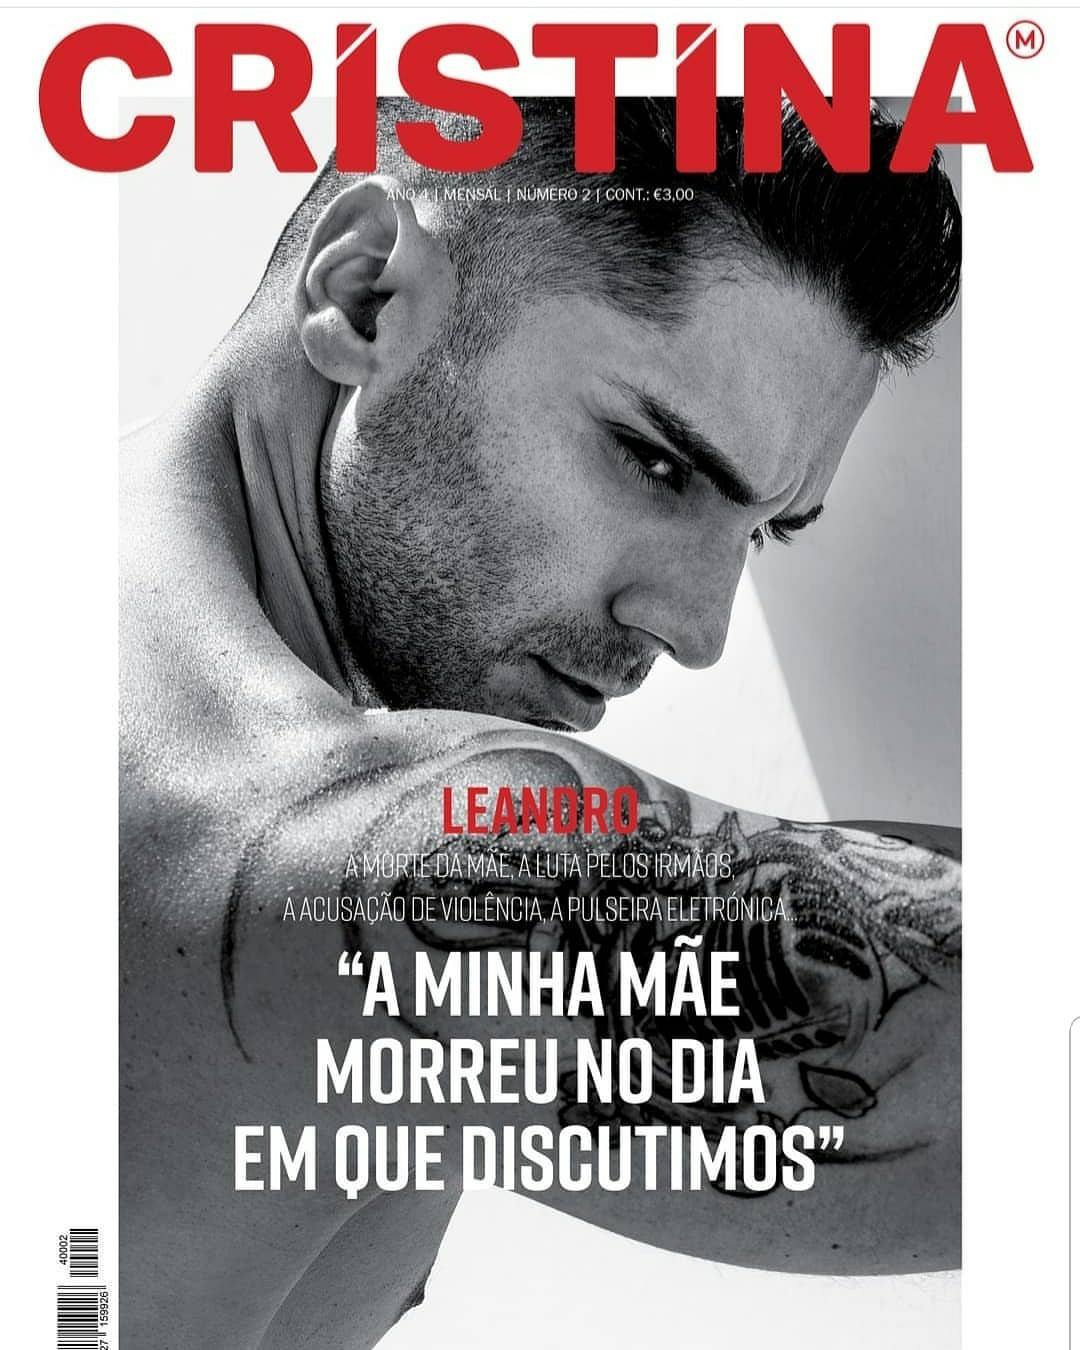 Lendro Revista Cristina Cristina Ferreira Emociona-Se Com Leandro